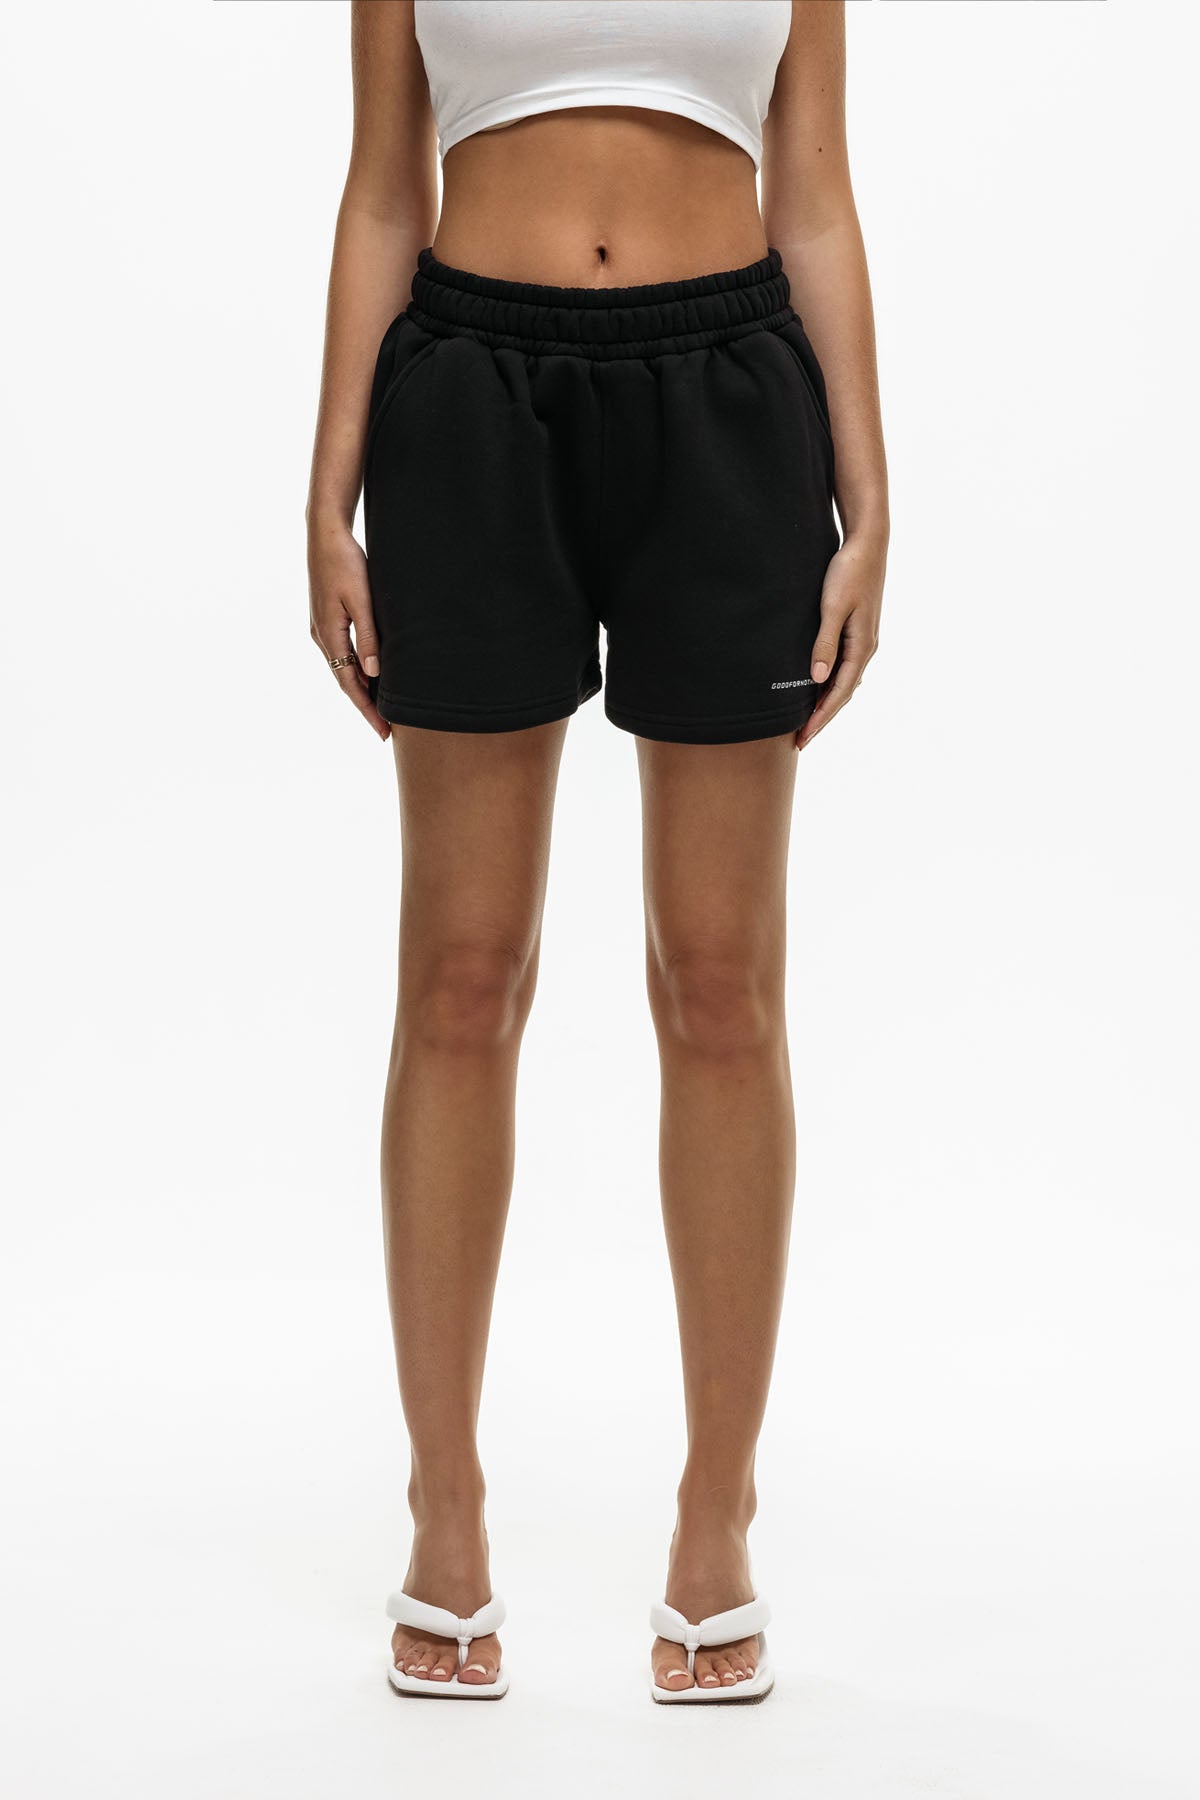 Black Jogger Shorts